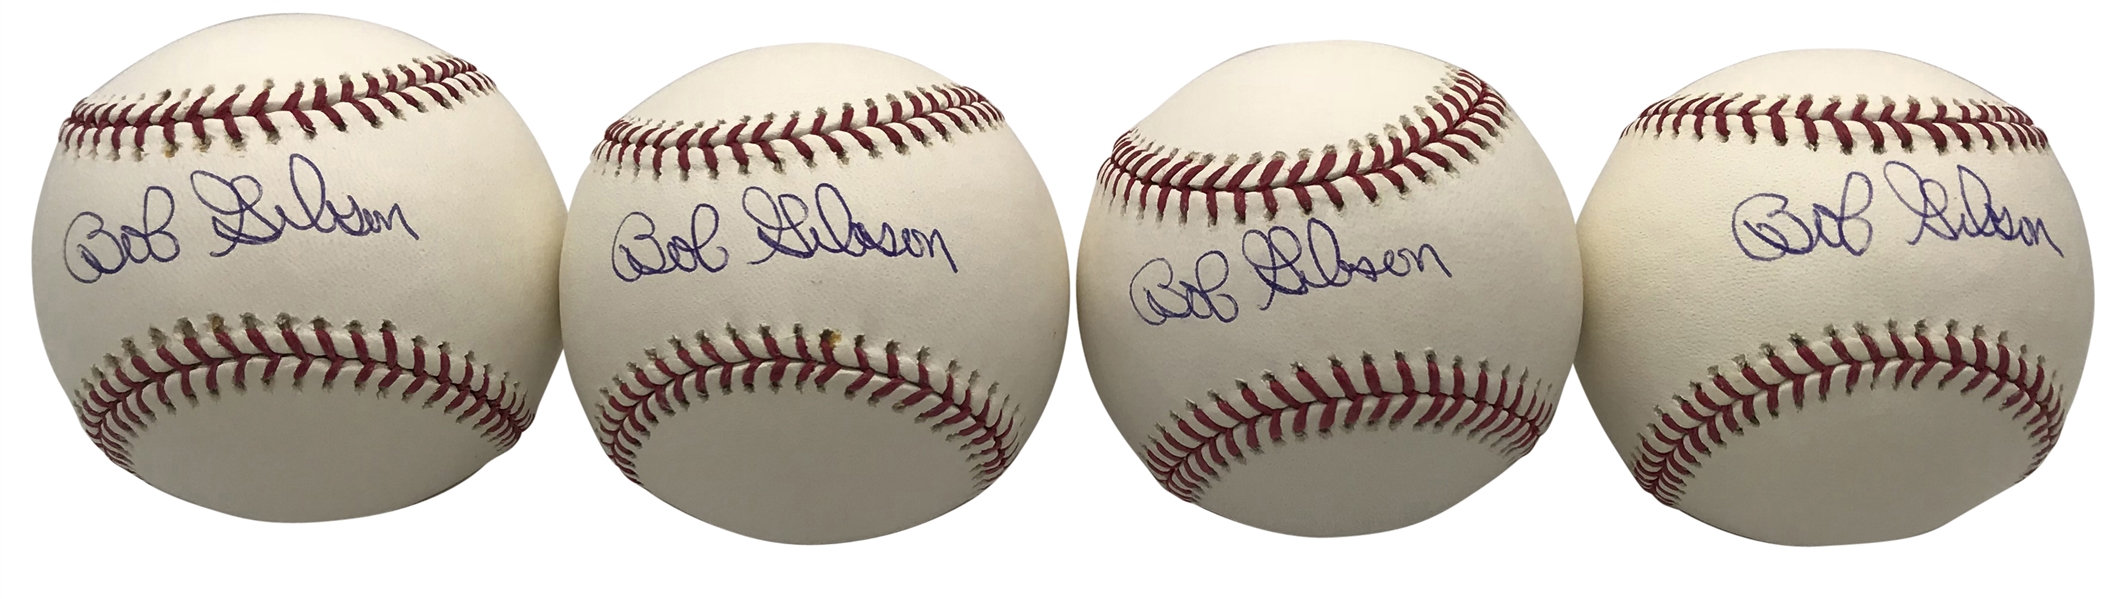 Lot of Eight (8) Bob Gibson Signed OML Baseballs (PSA/DNA)